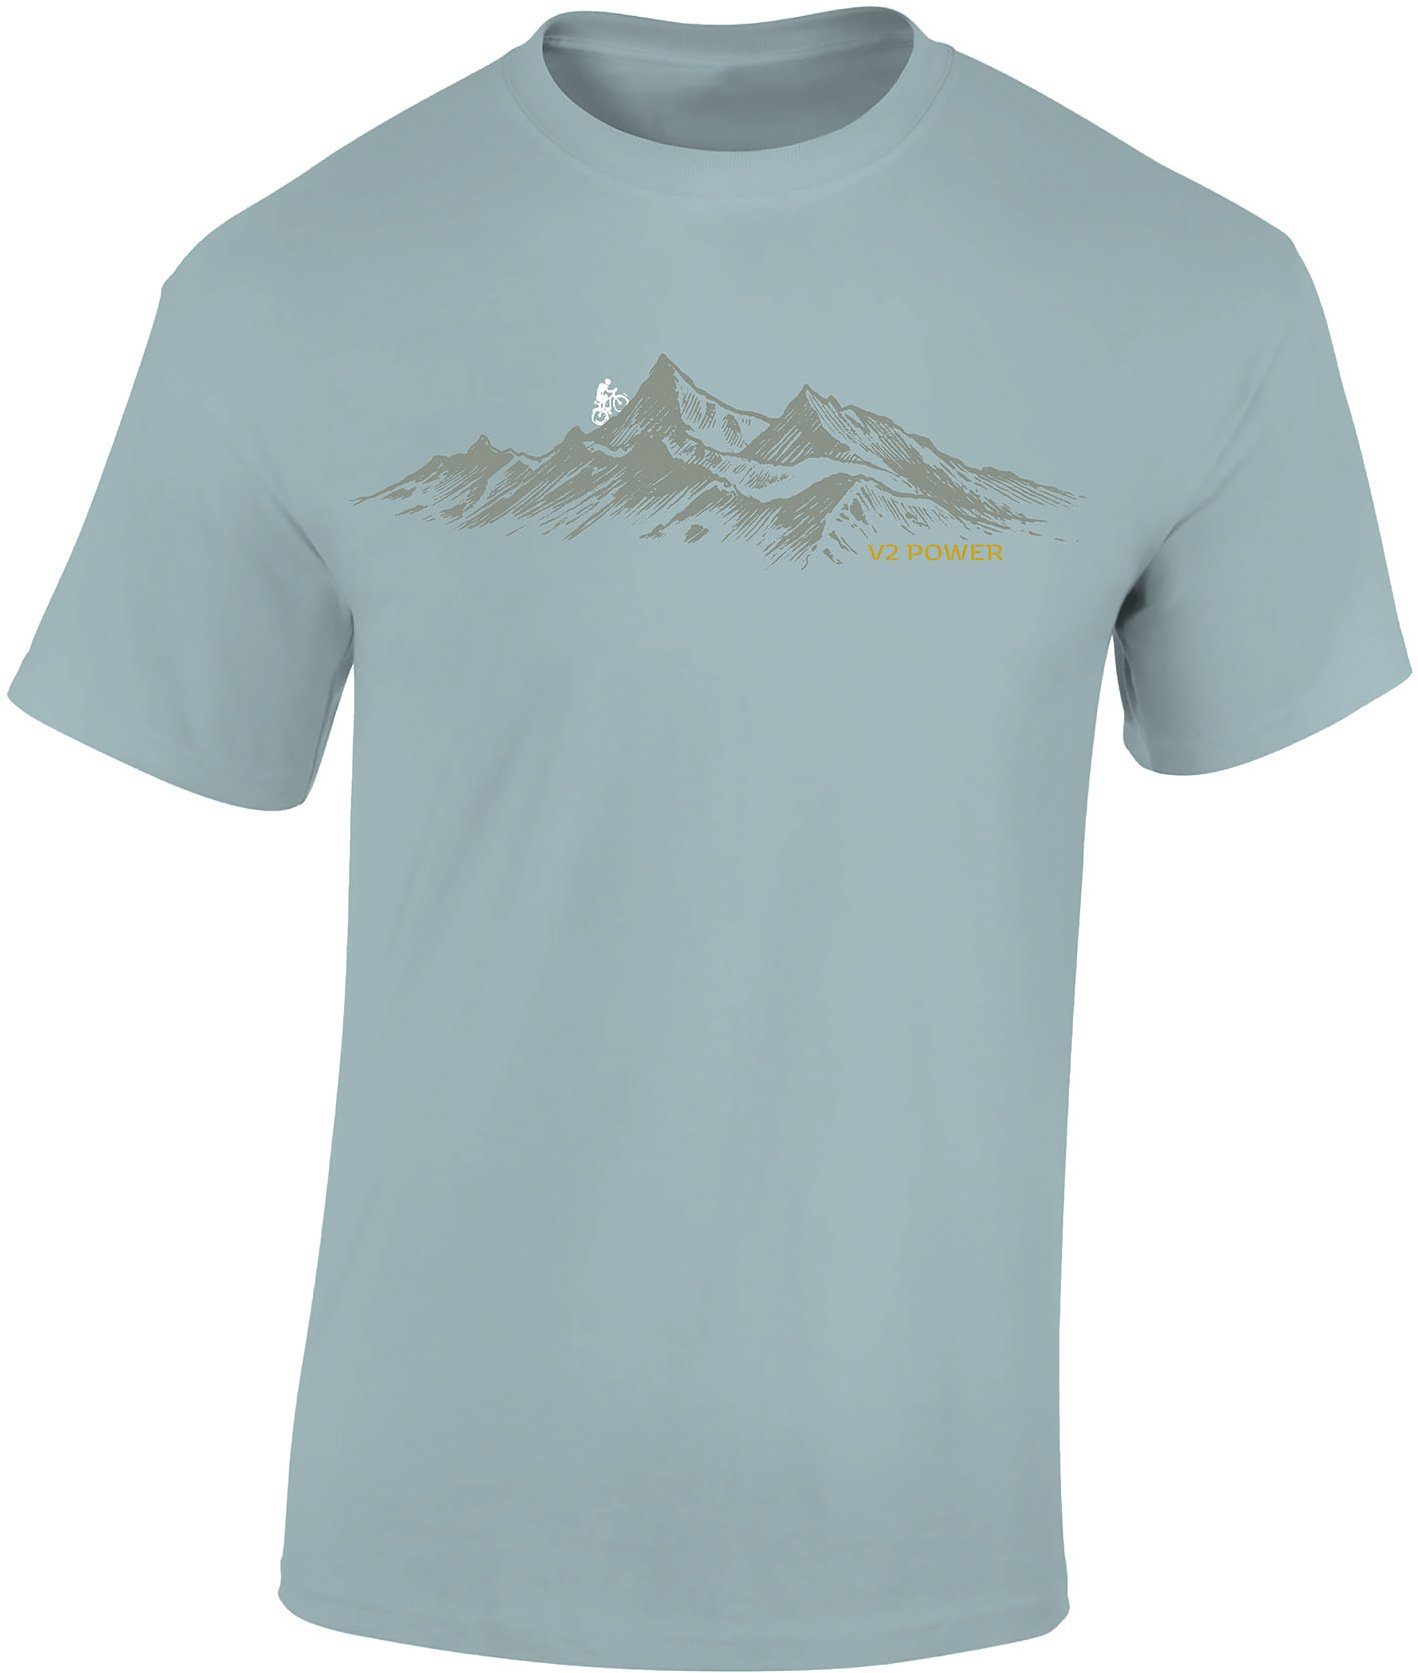 Baddery Print-Shirt Fahrrad T-Shirt : V2 Power - Sport Tshirts Herren - Mountainbike Shirt, hochwertiger Siebdruck, auch Übergrößen, aus Baumwolle